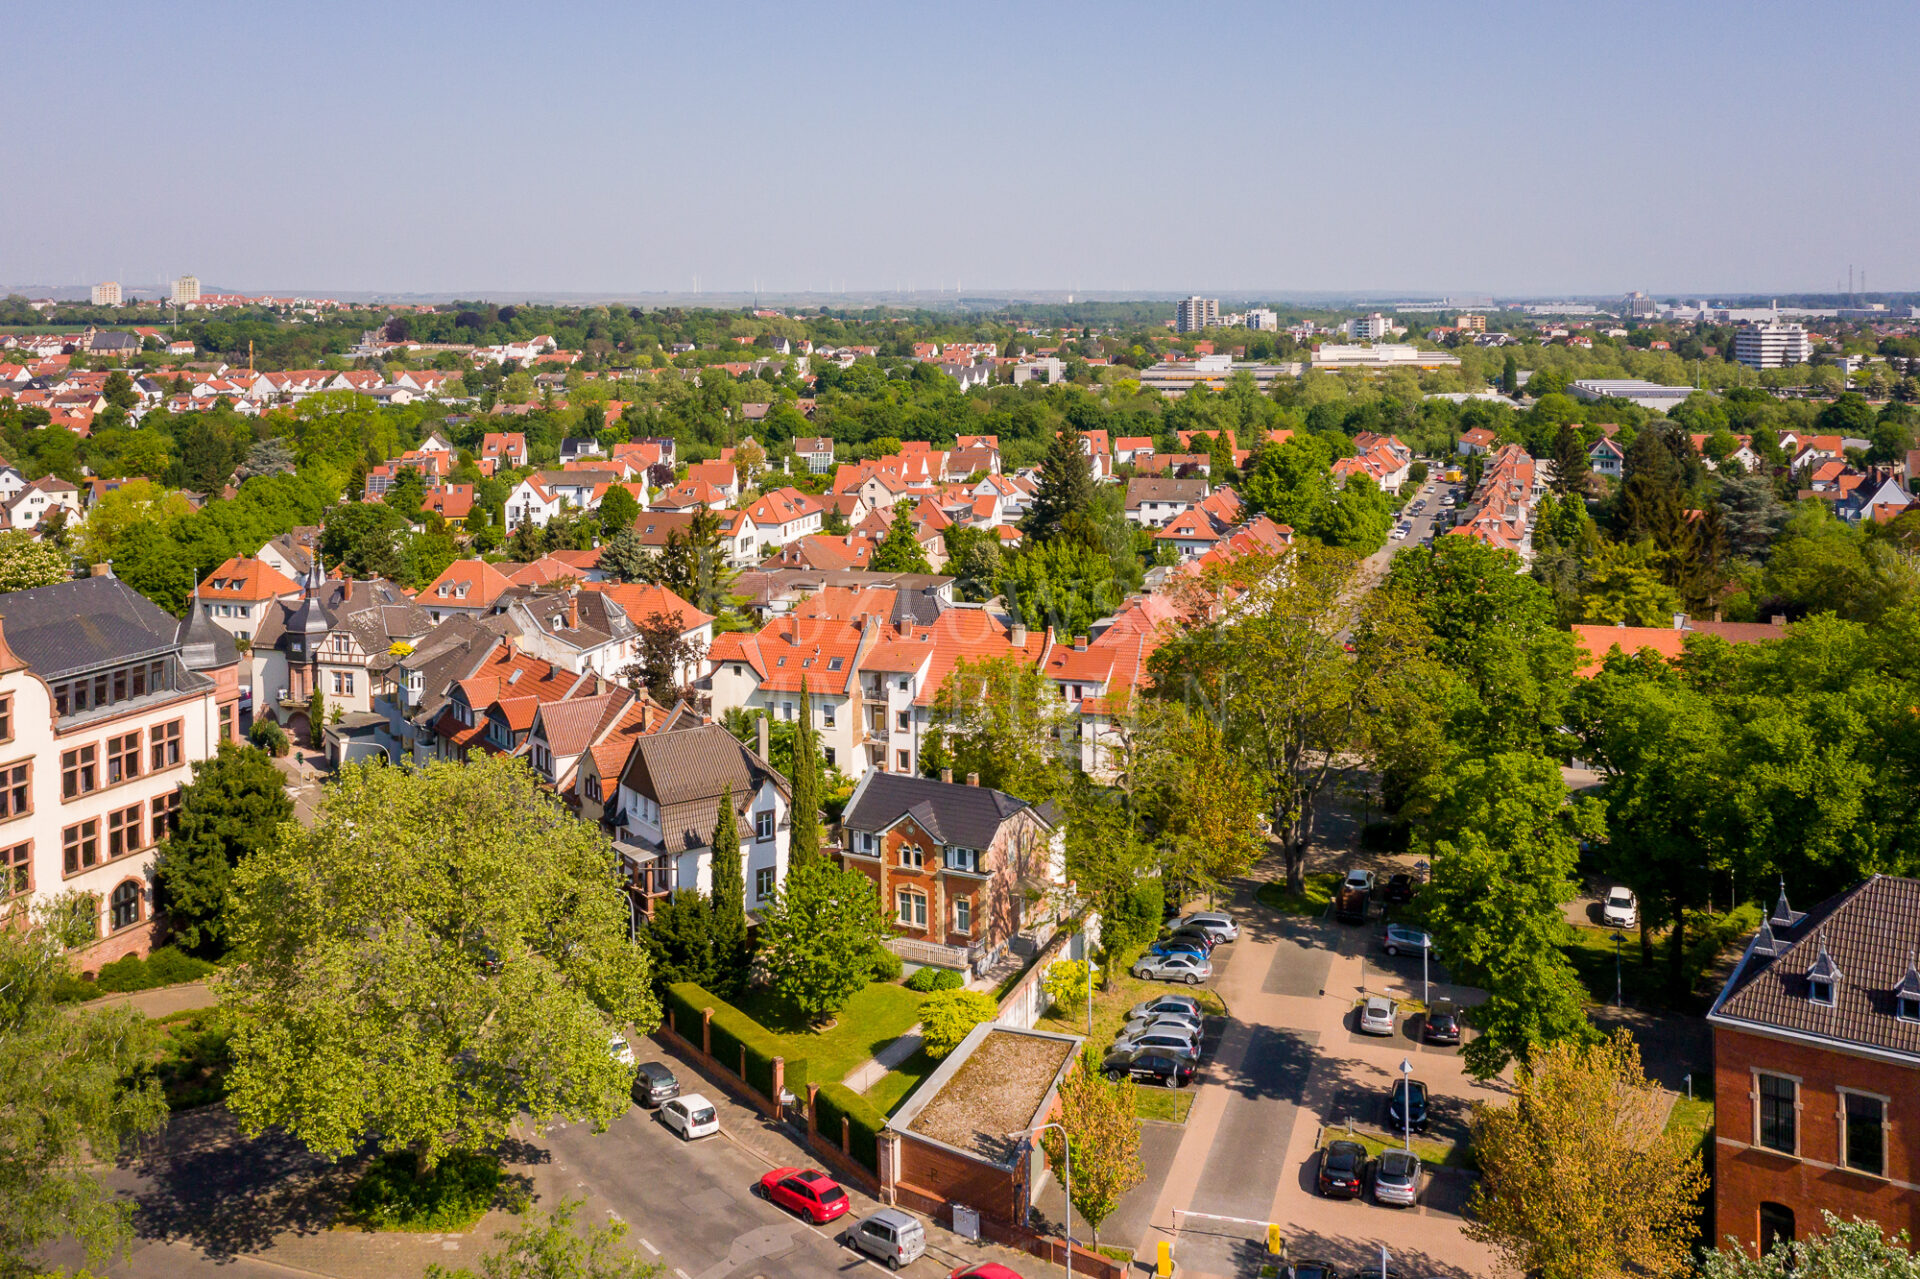 Luftaufnahme eines Vorortgebiets mit Häuserreihen, grünen Bäumen, die die Bodengesundheit unterstützen, und geparkten Autos unter einem klaren blauen Himmel.